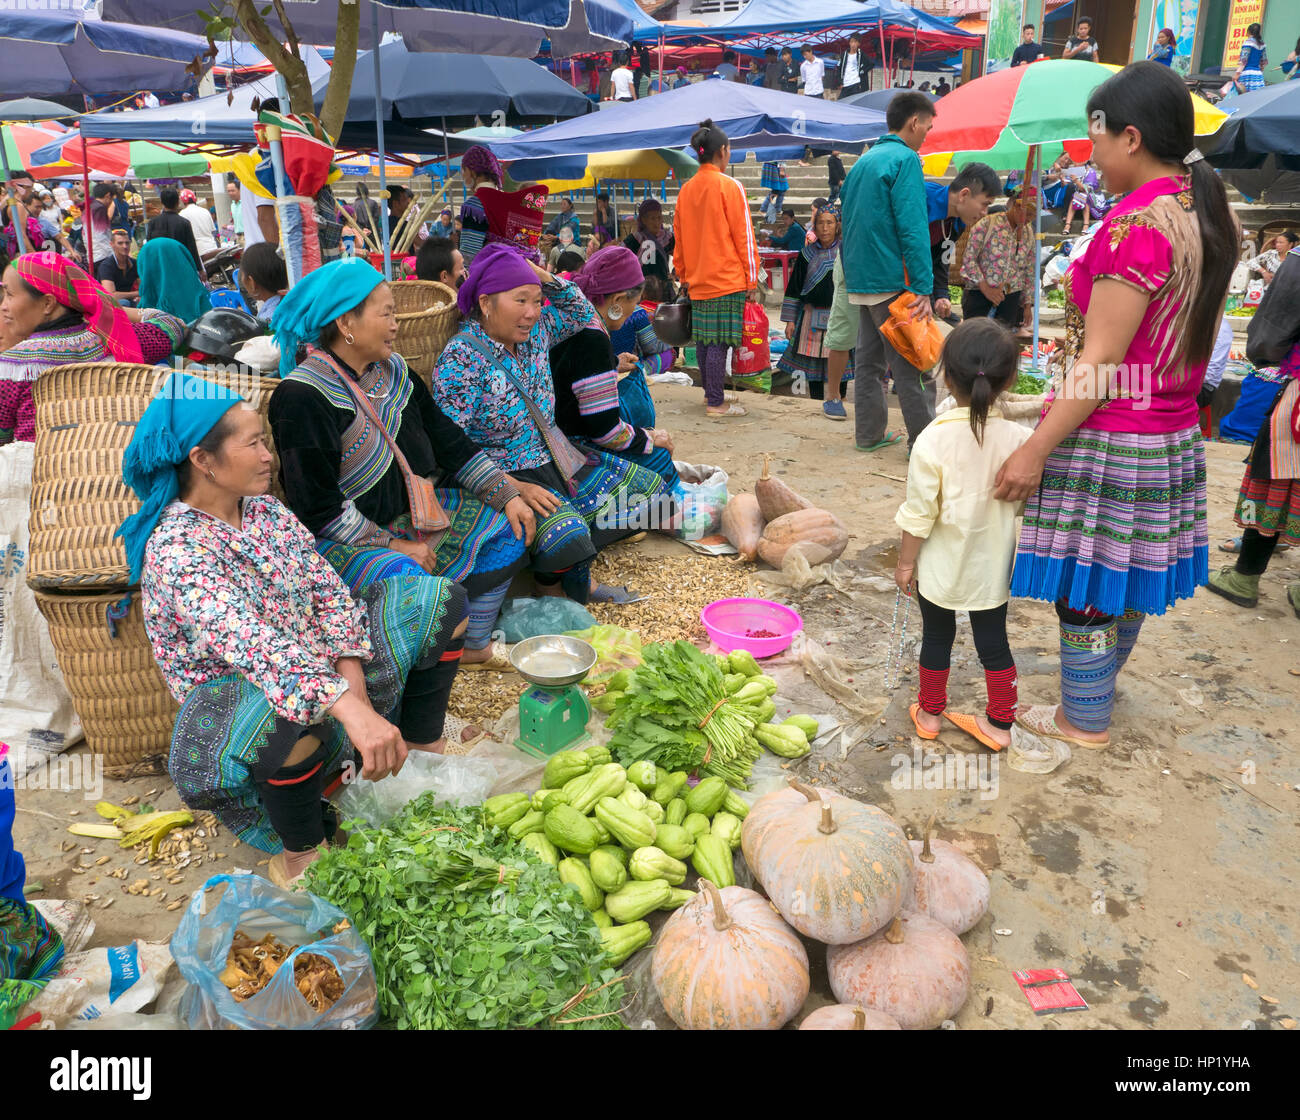 Los agricultores del mercado de Bac Ha, los agricultores nativos vendiendo sus verduras y hierbas cultivadas en casa vistiendo vestimentas nativas, conversación con amigos y clientes. Foto de stock